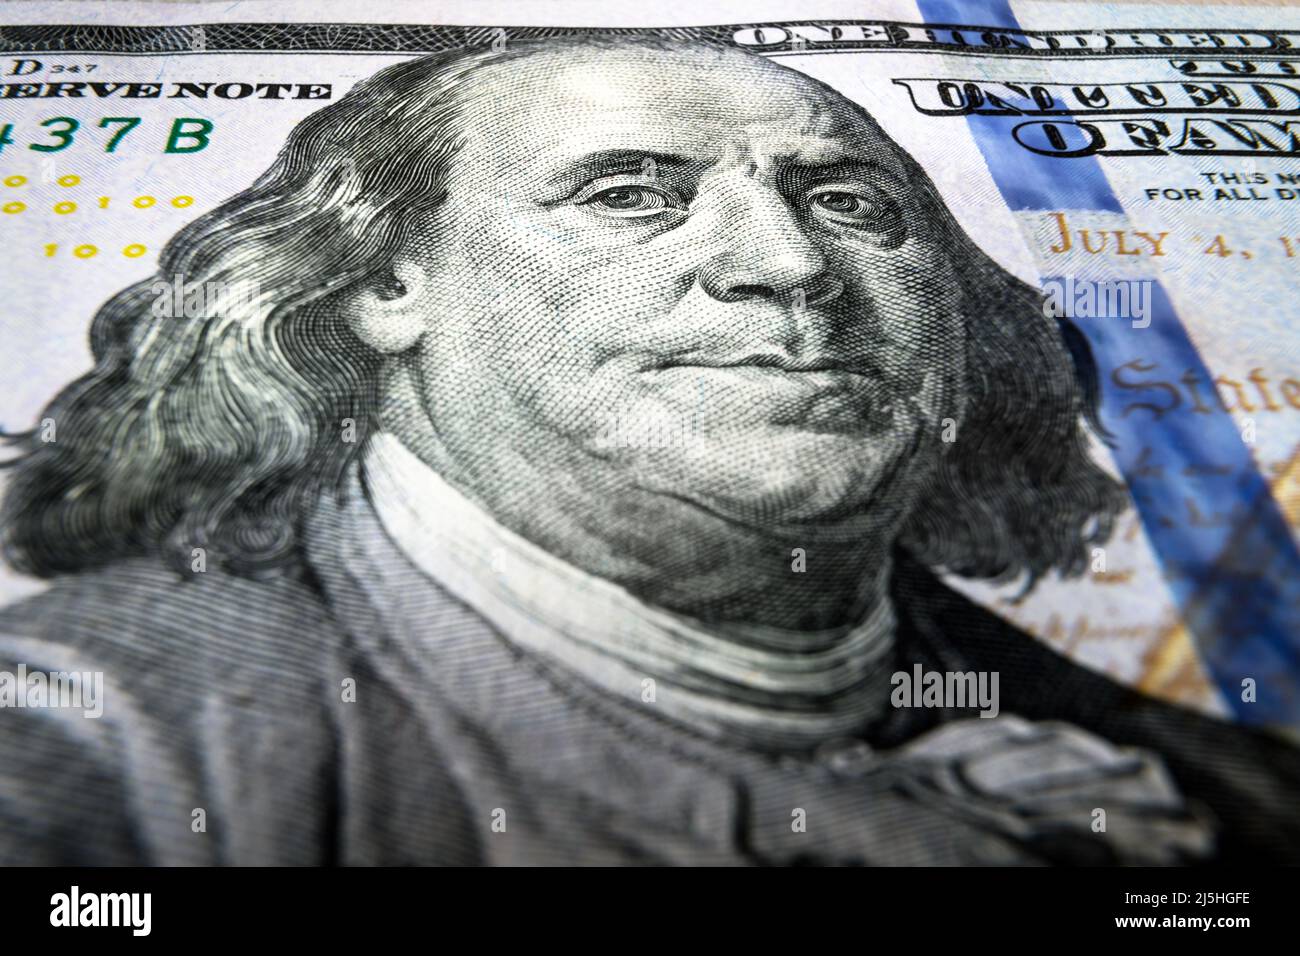 Gros plan sur la facture de 100 dollars américains, portrait de Benjamin Franklin sur la note de dollar américain. Photo macro de l'argent du papier, un billet de cent dollars de clôture. Concept de Banque D'Images